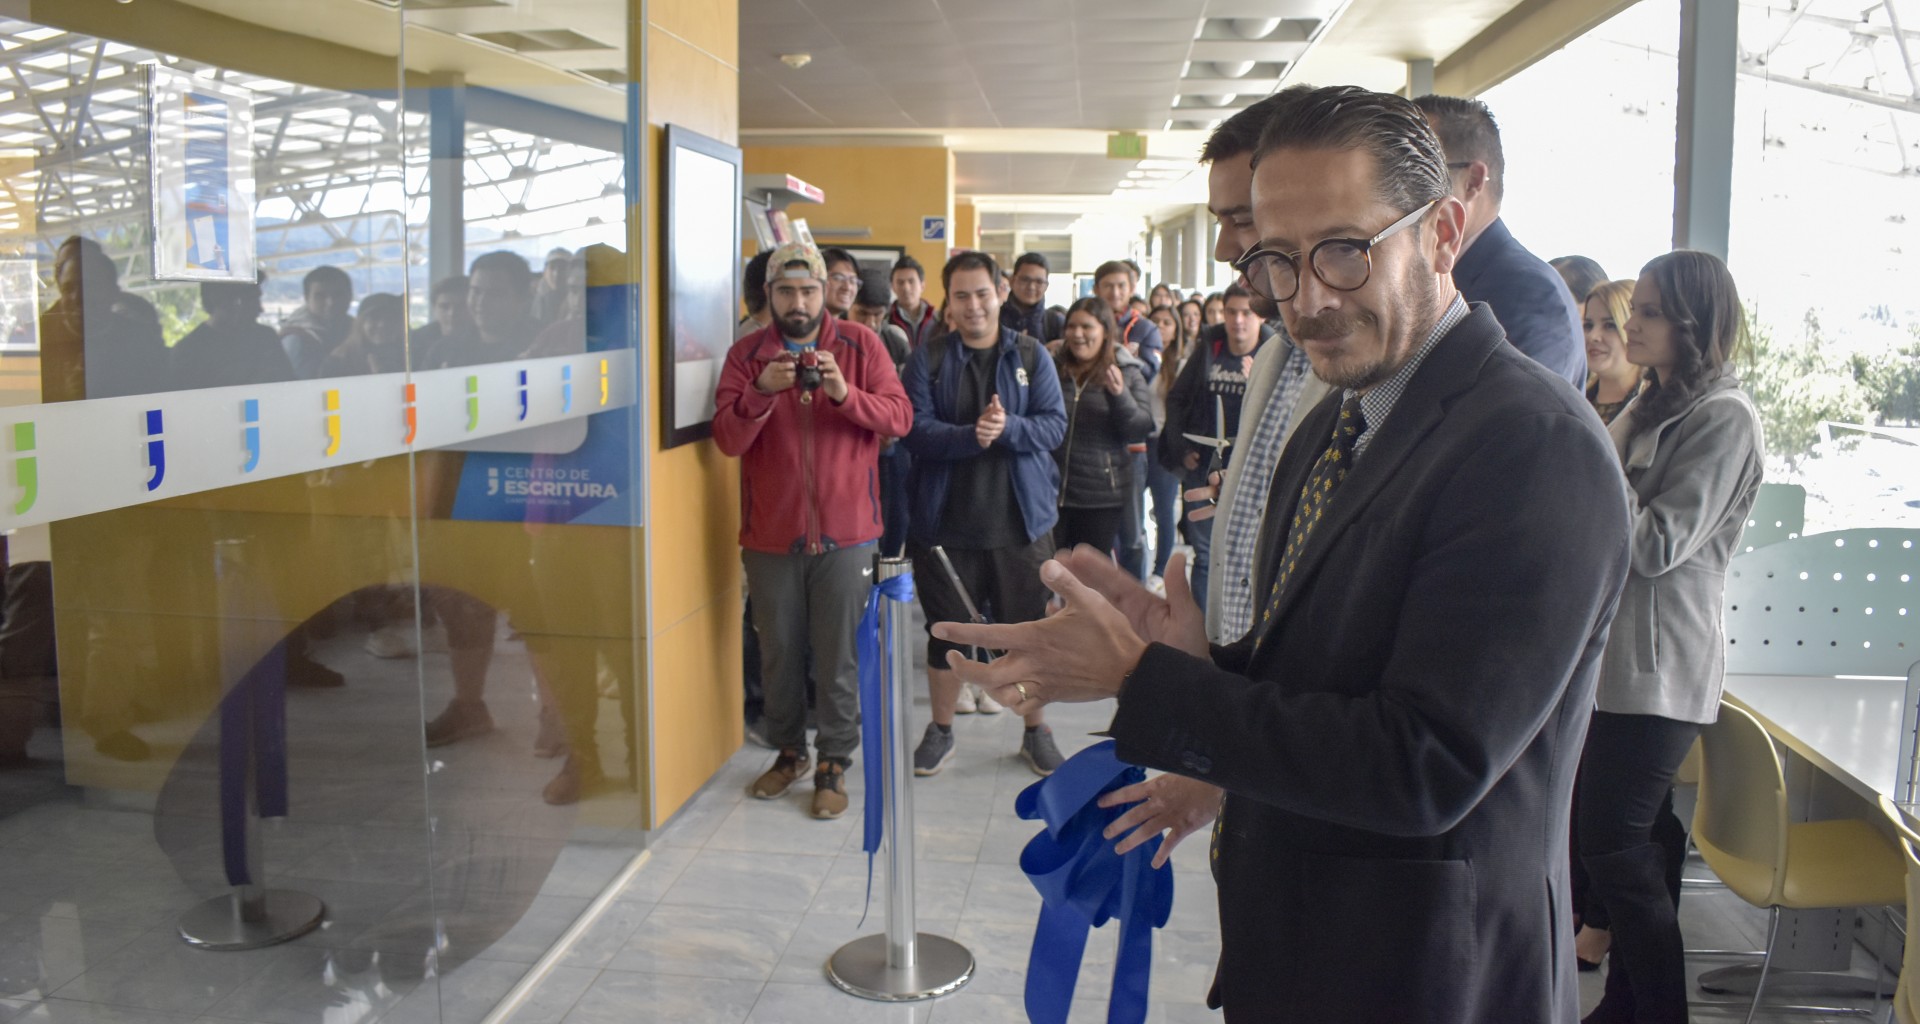 Centro de Escritura es inaugurado en Campus Morelia